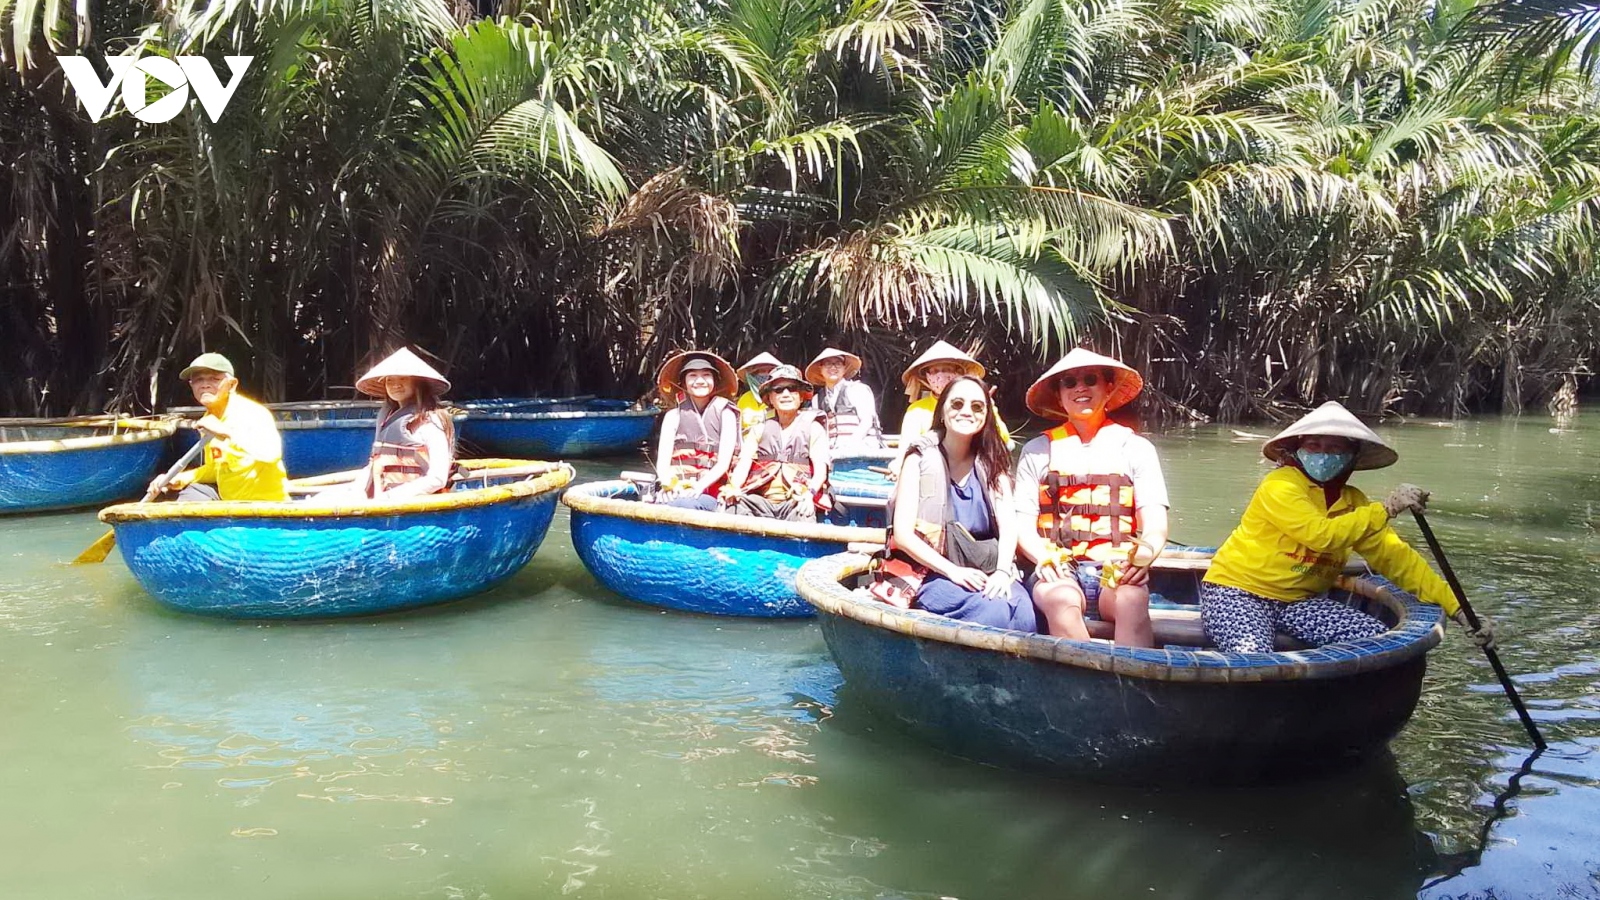 Nông dân Duy Xuyên đưa khách đi thả lưới, thăm làng nghề